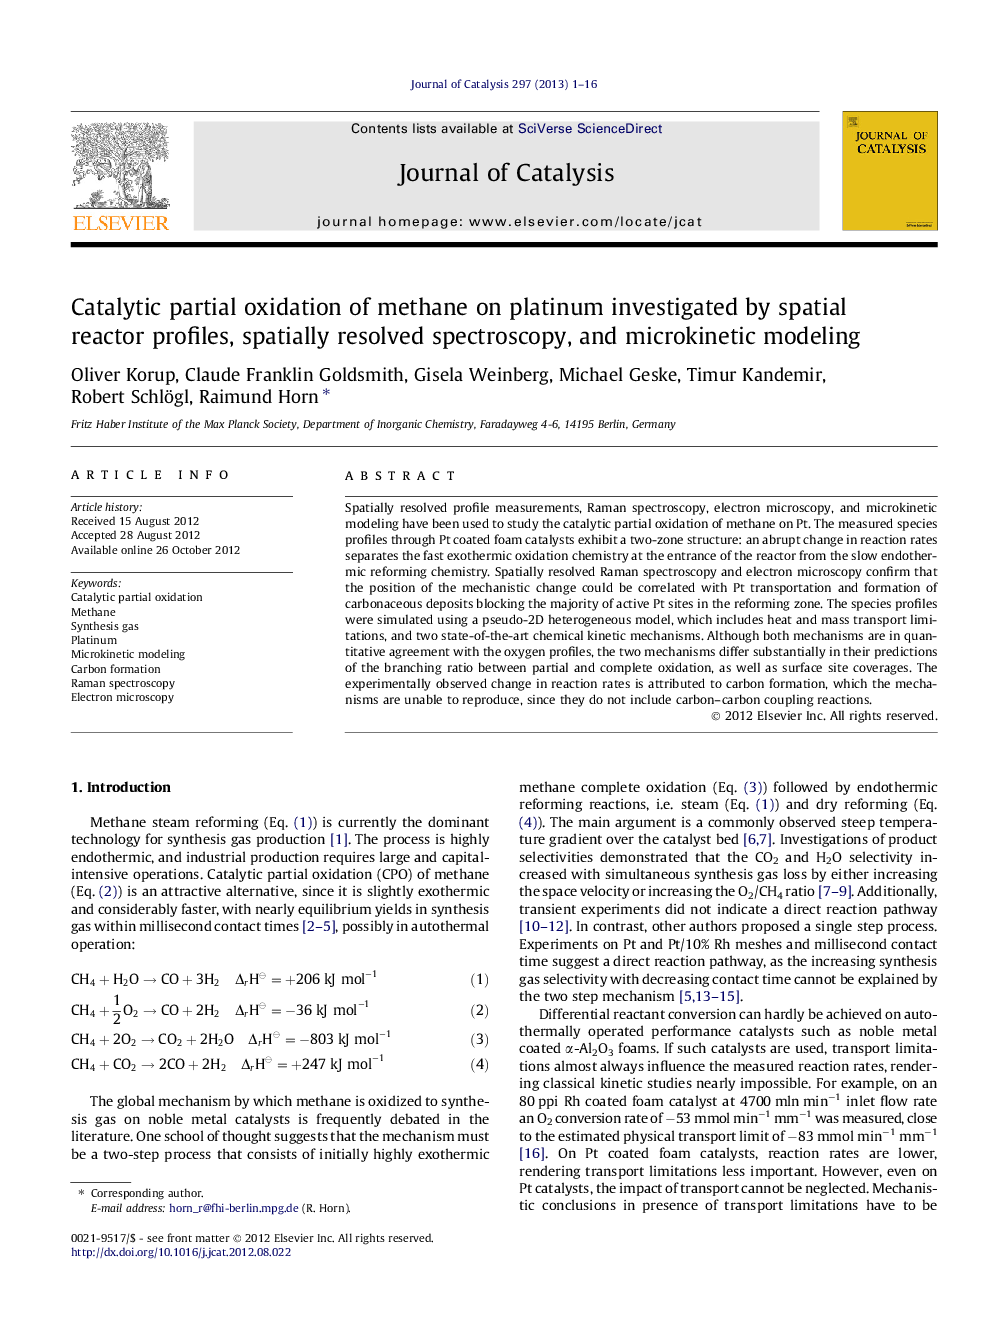 اکسیداسیون جزئی کاتالیستی متان در پلاتین که توسط پروفیل های راکتور فضایی، طیف سنجی حل شده فضایی و مدل سازی میکروکینیتیک 